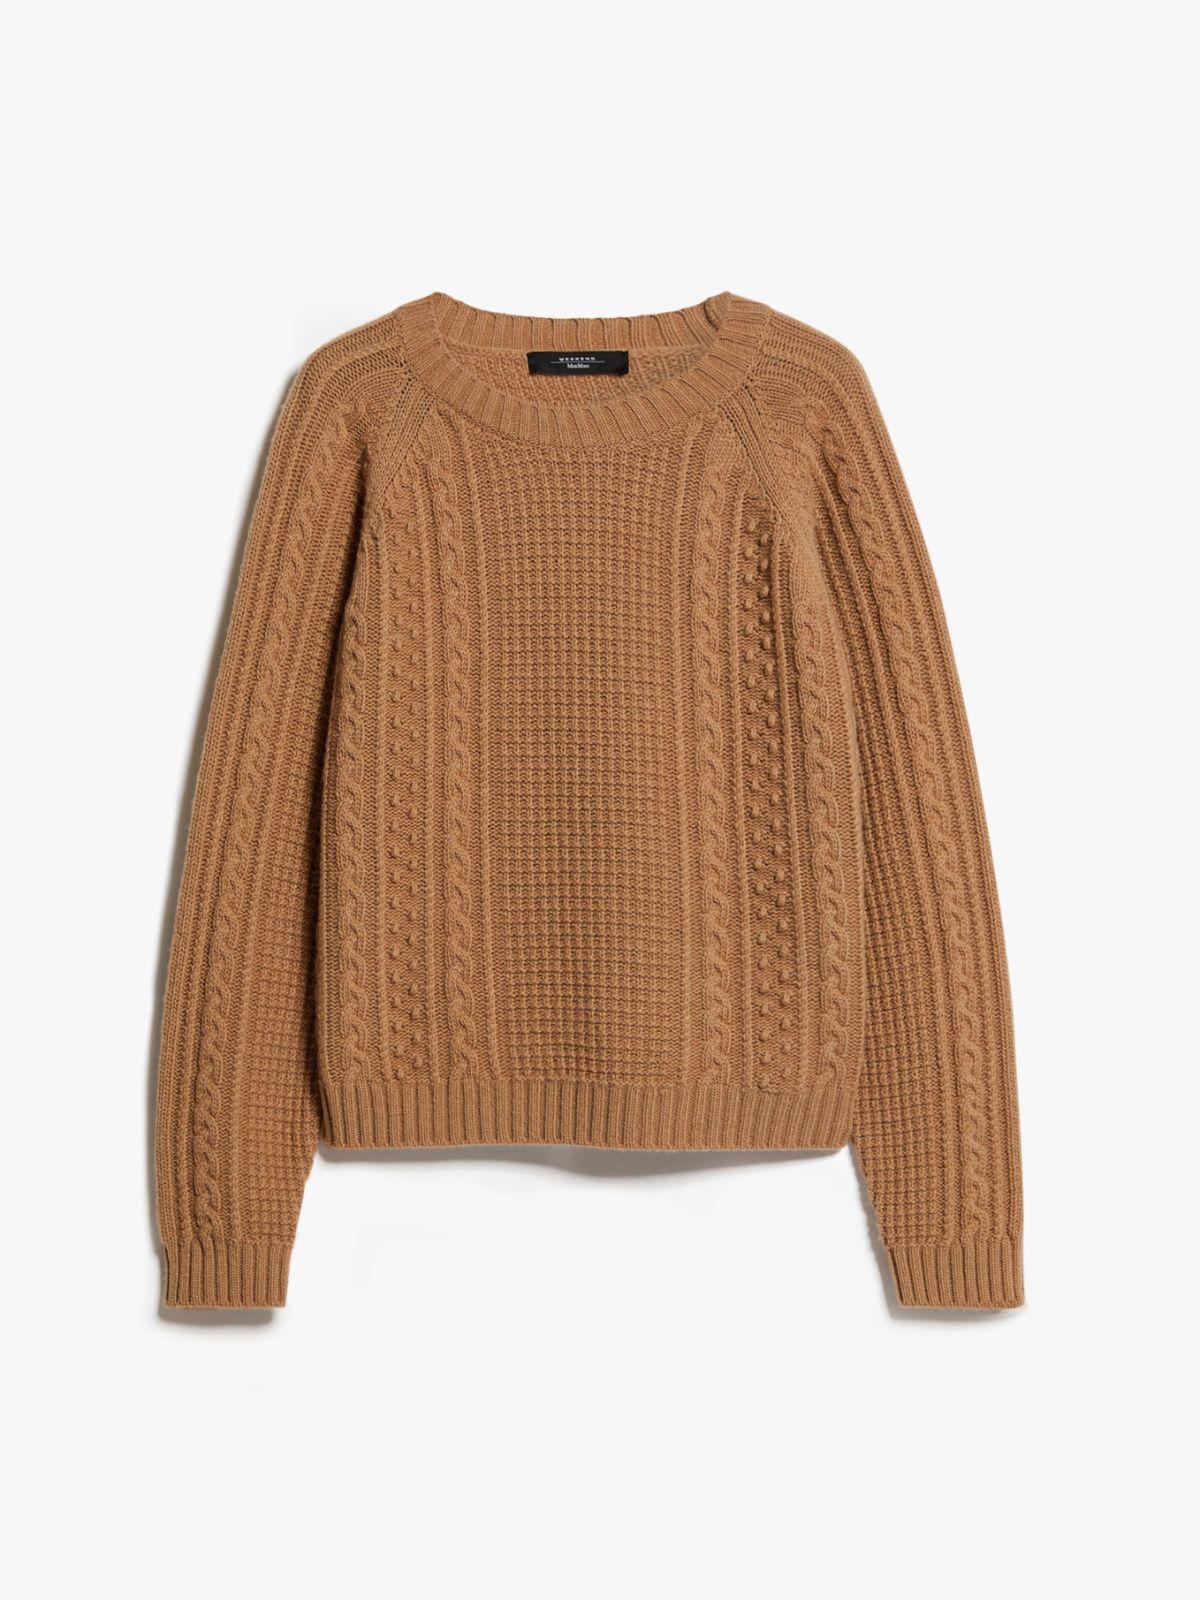 Wool yarn sweater - CAMEL - Weekend Max Mara - 6